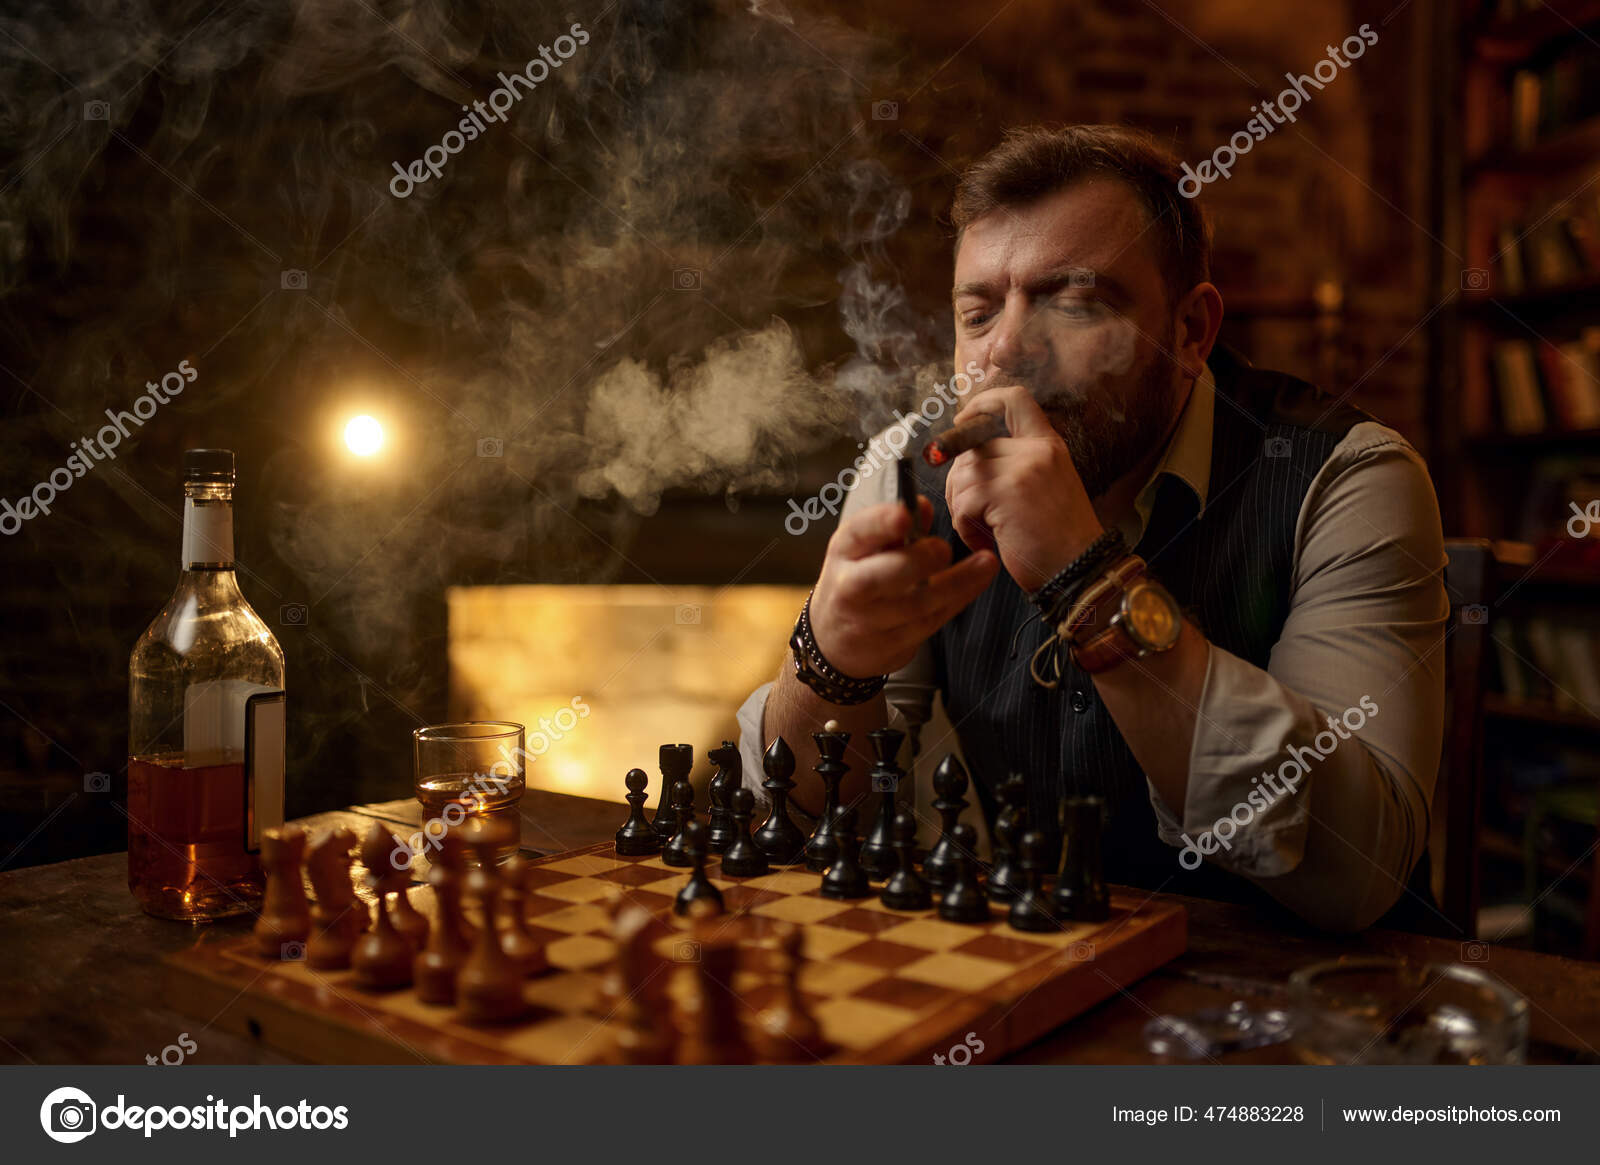 Xadrez de jogo de tabuleiro e homens jogando em uma mesa enquanto